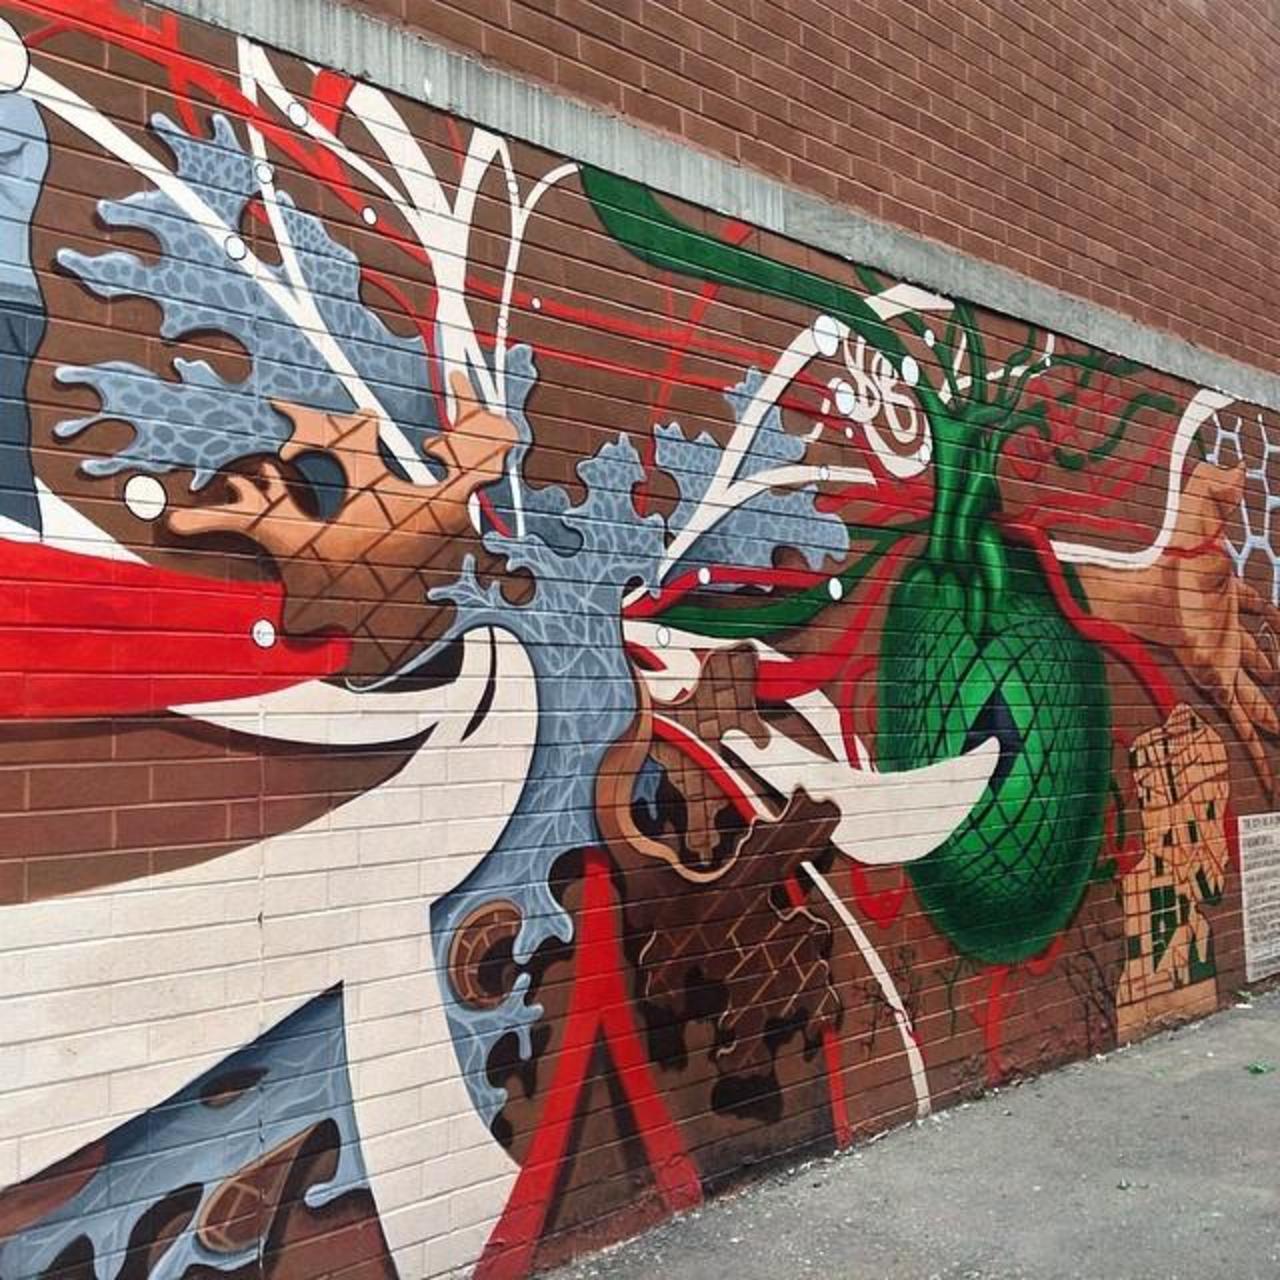 Mural Art
Bowery Street NYC
#mural #art #graff #graffiti #graffitiart #outside #outsider #outsiderart #street #st... http://t.co/eyyNDG2lxp